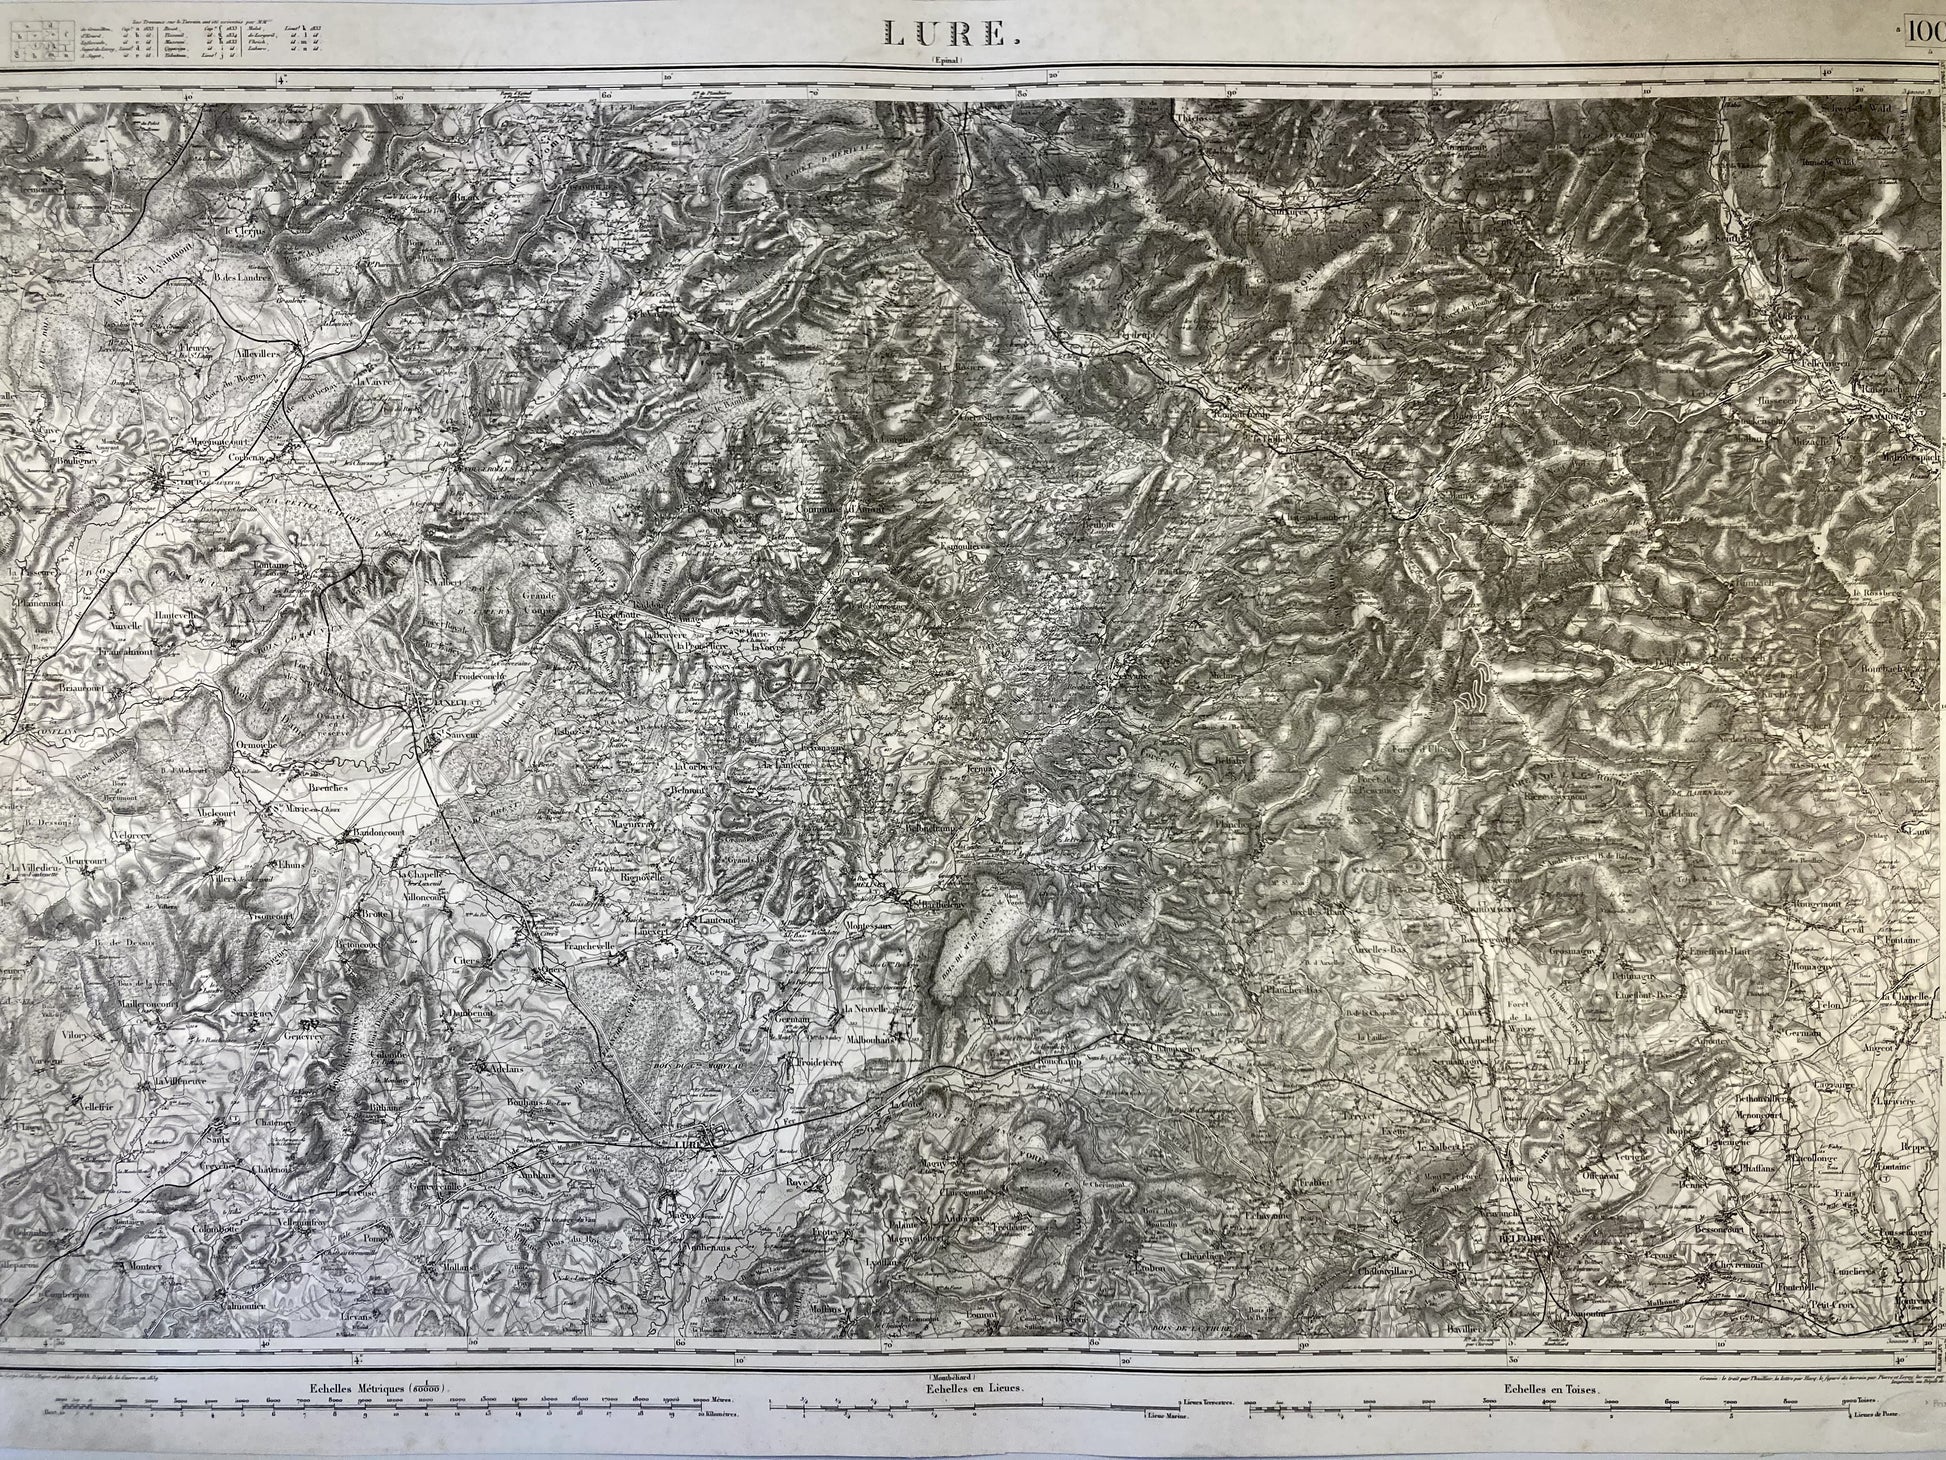 Carte d'Etat-Major ancienne de Lure